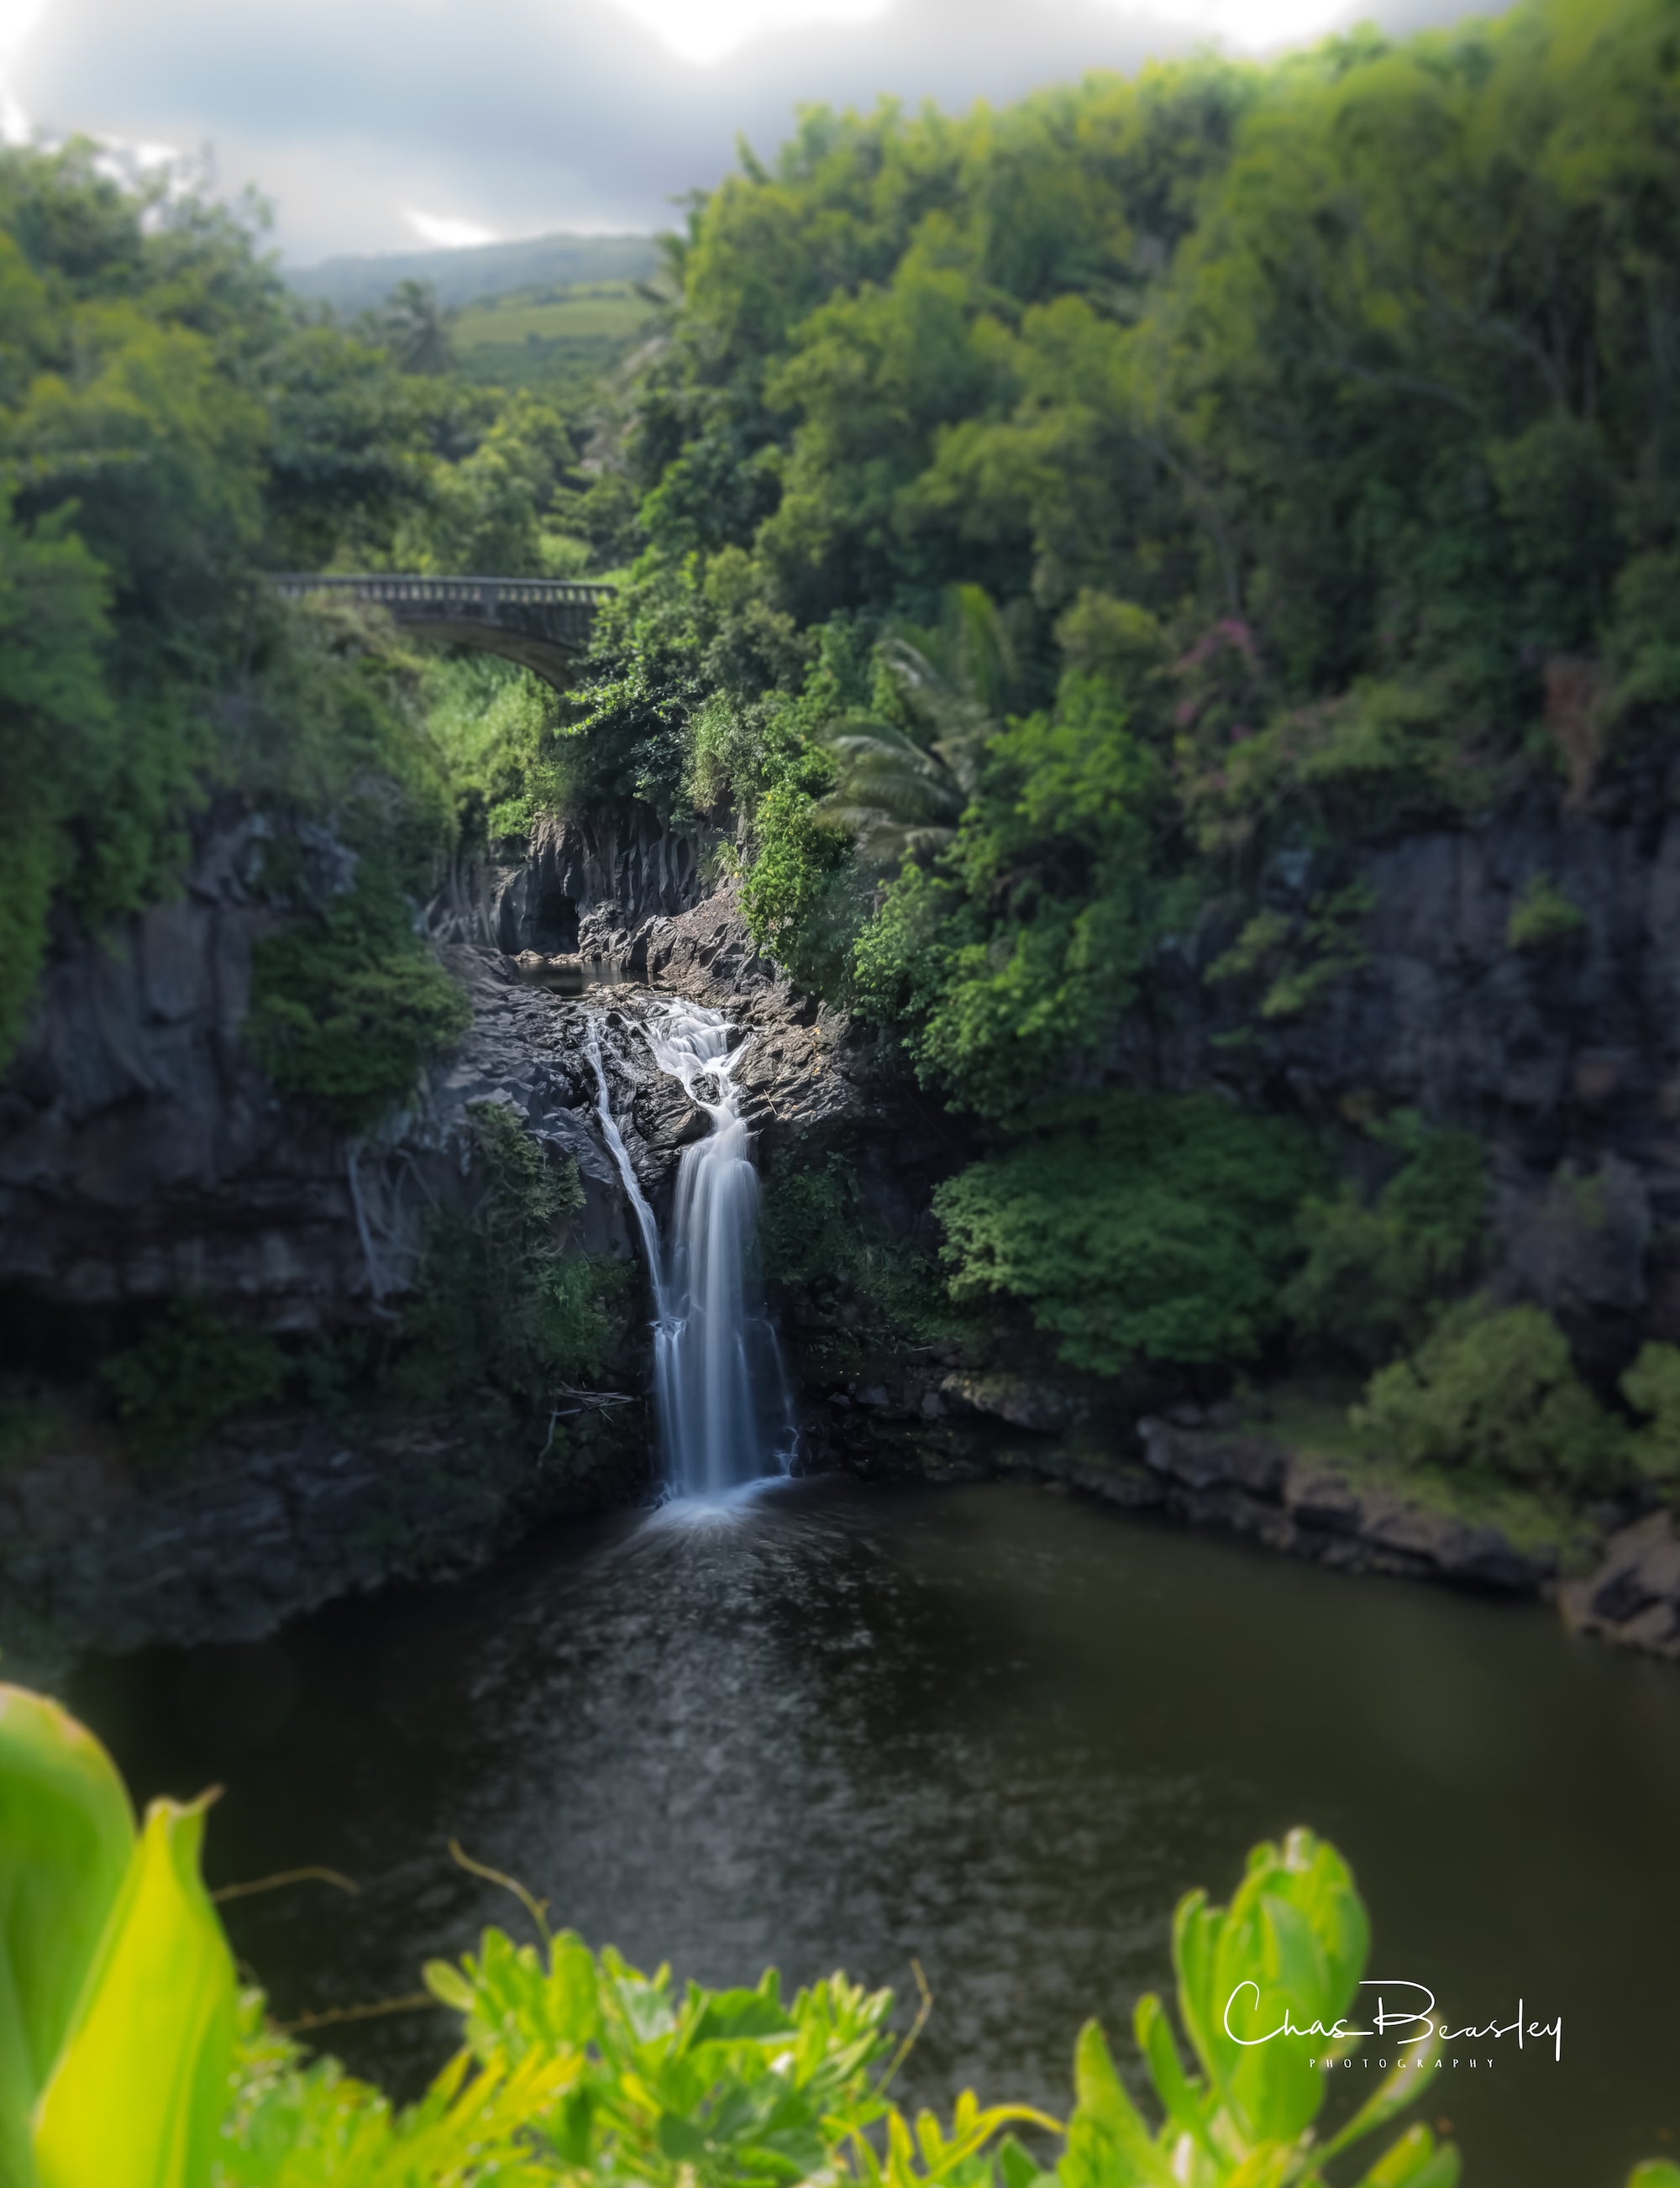 Wailua Iki Falls